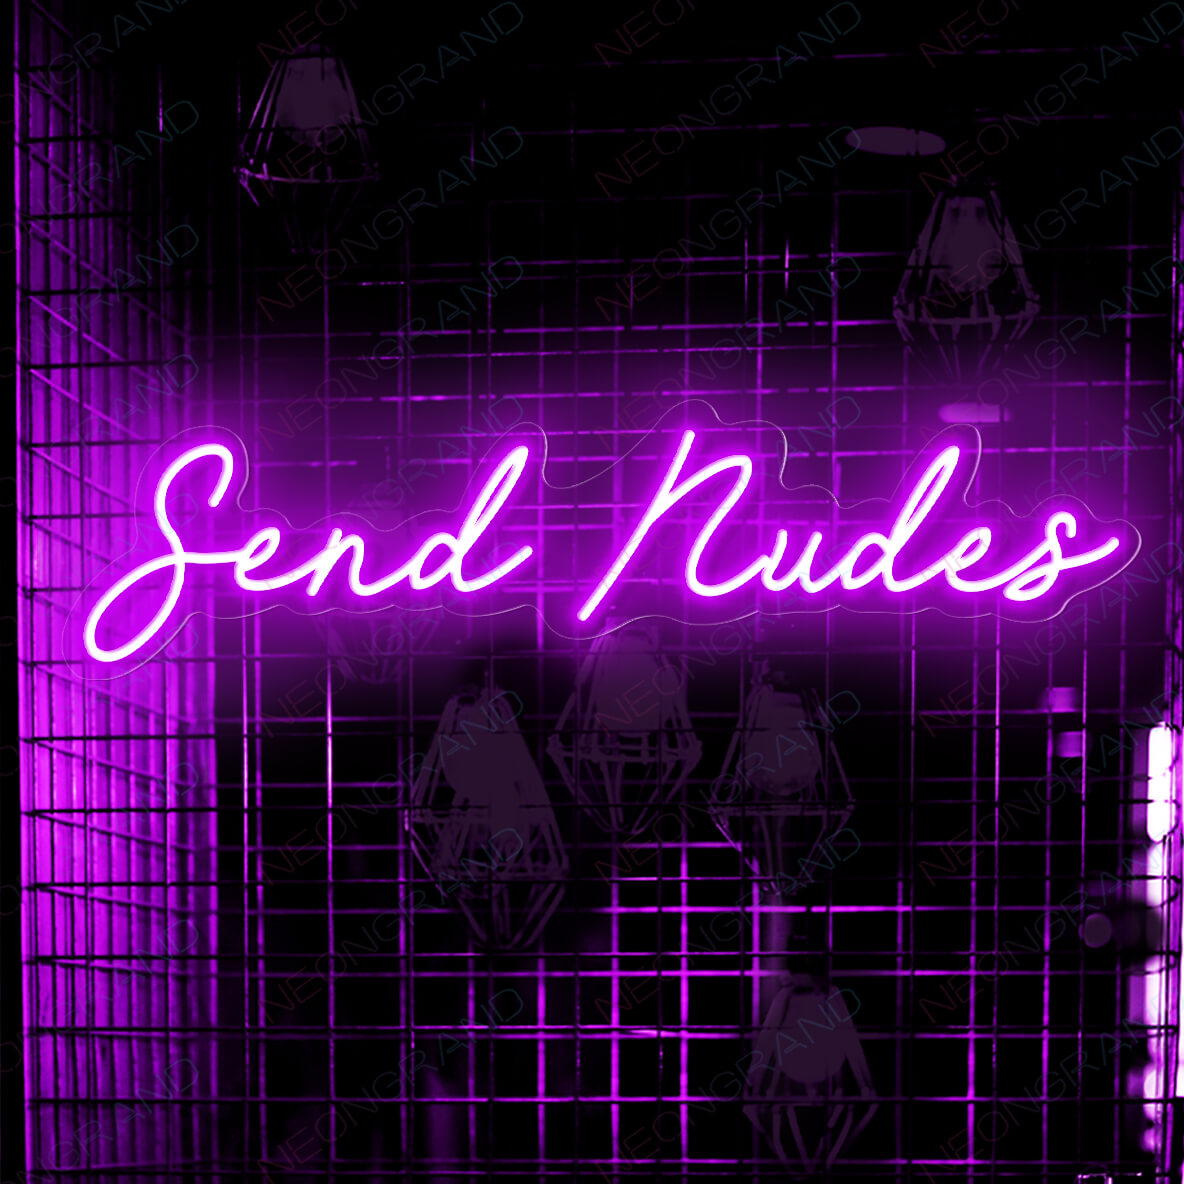 Send Nudes Neon Sign Led Light purple1